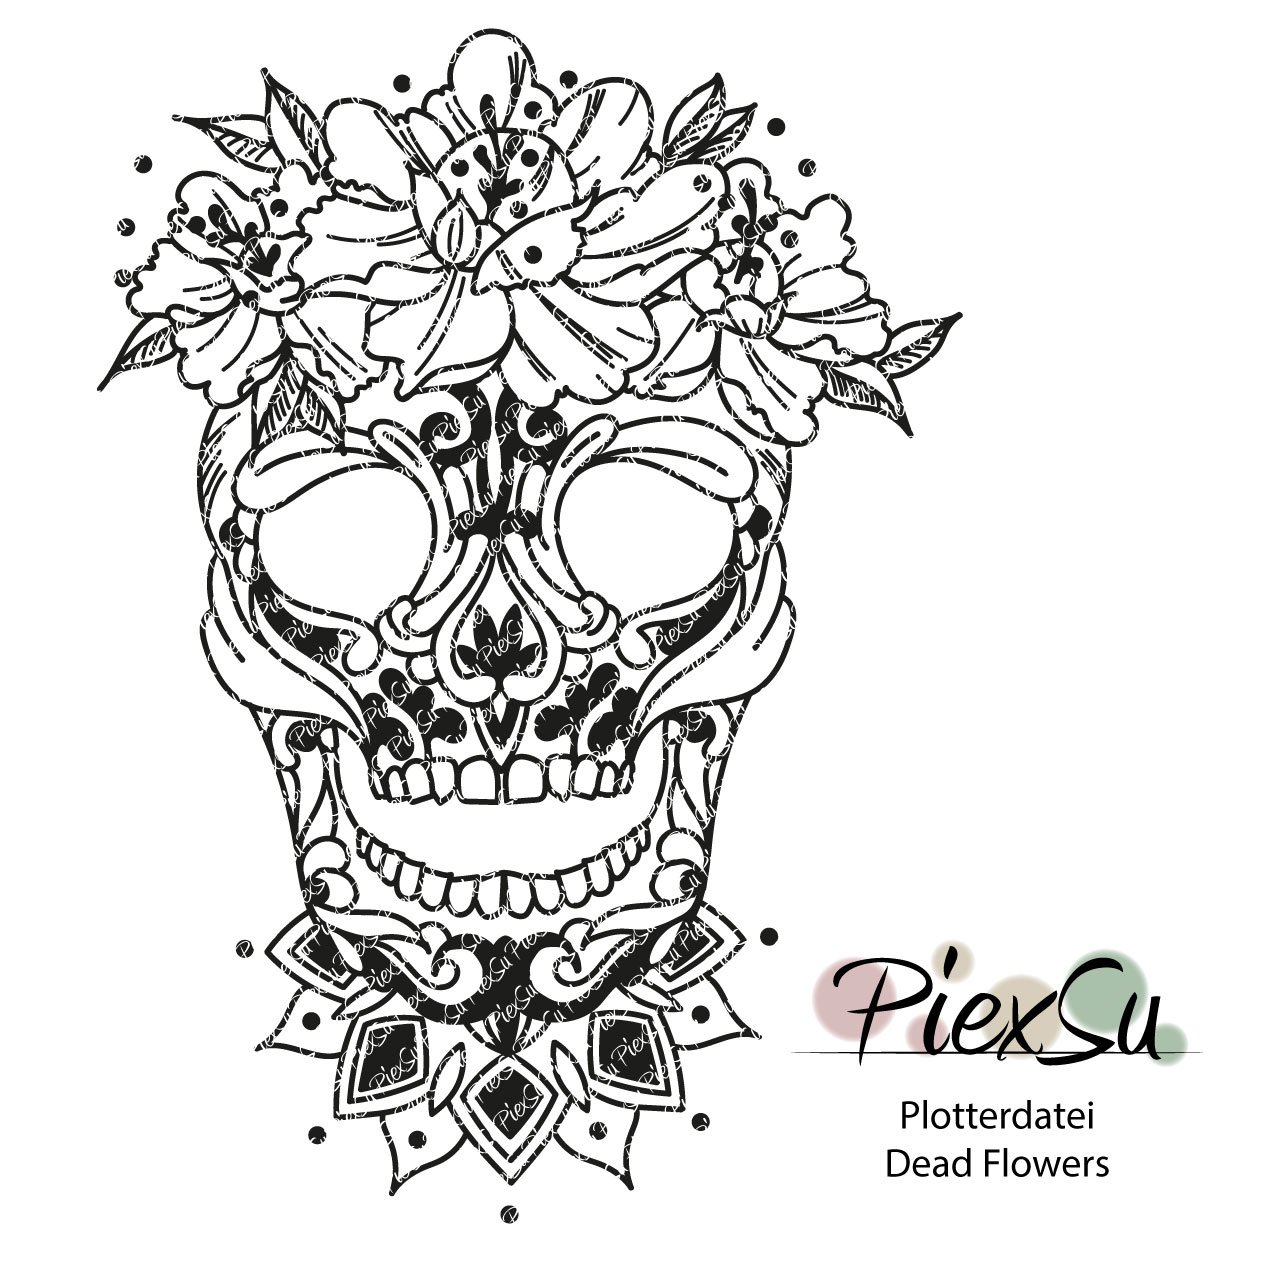 PiexSu-Plotterdatei---Dead-Flowers-Titelbild-dxf-svg-plotten